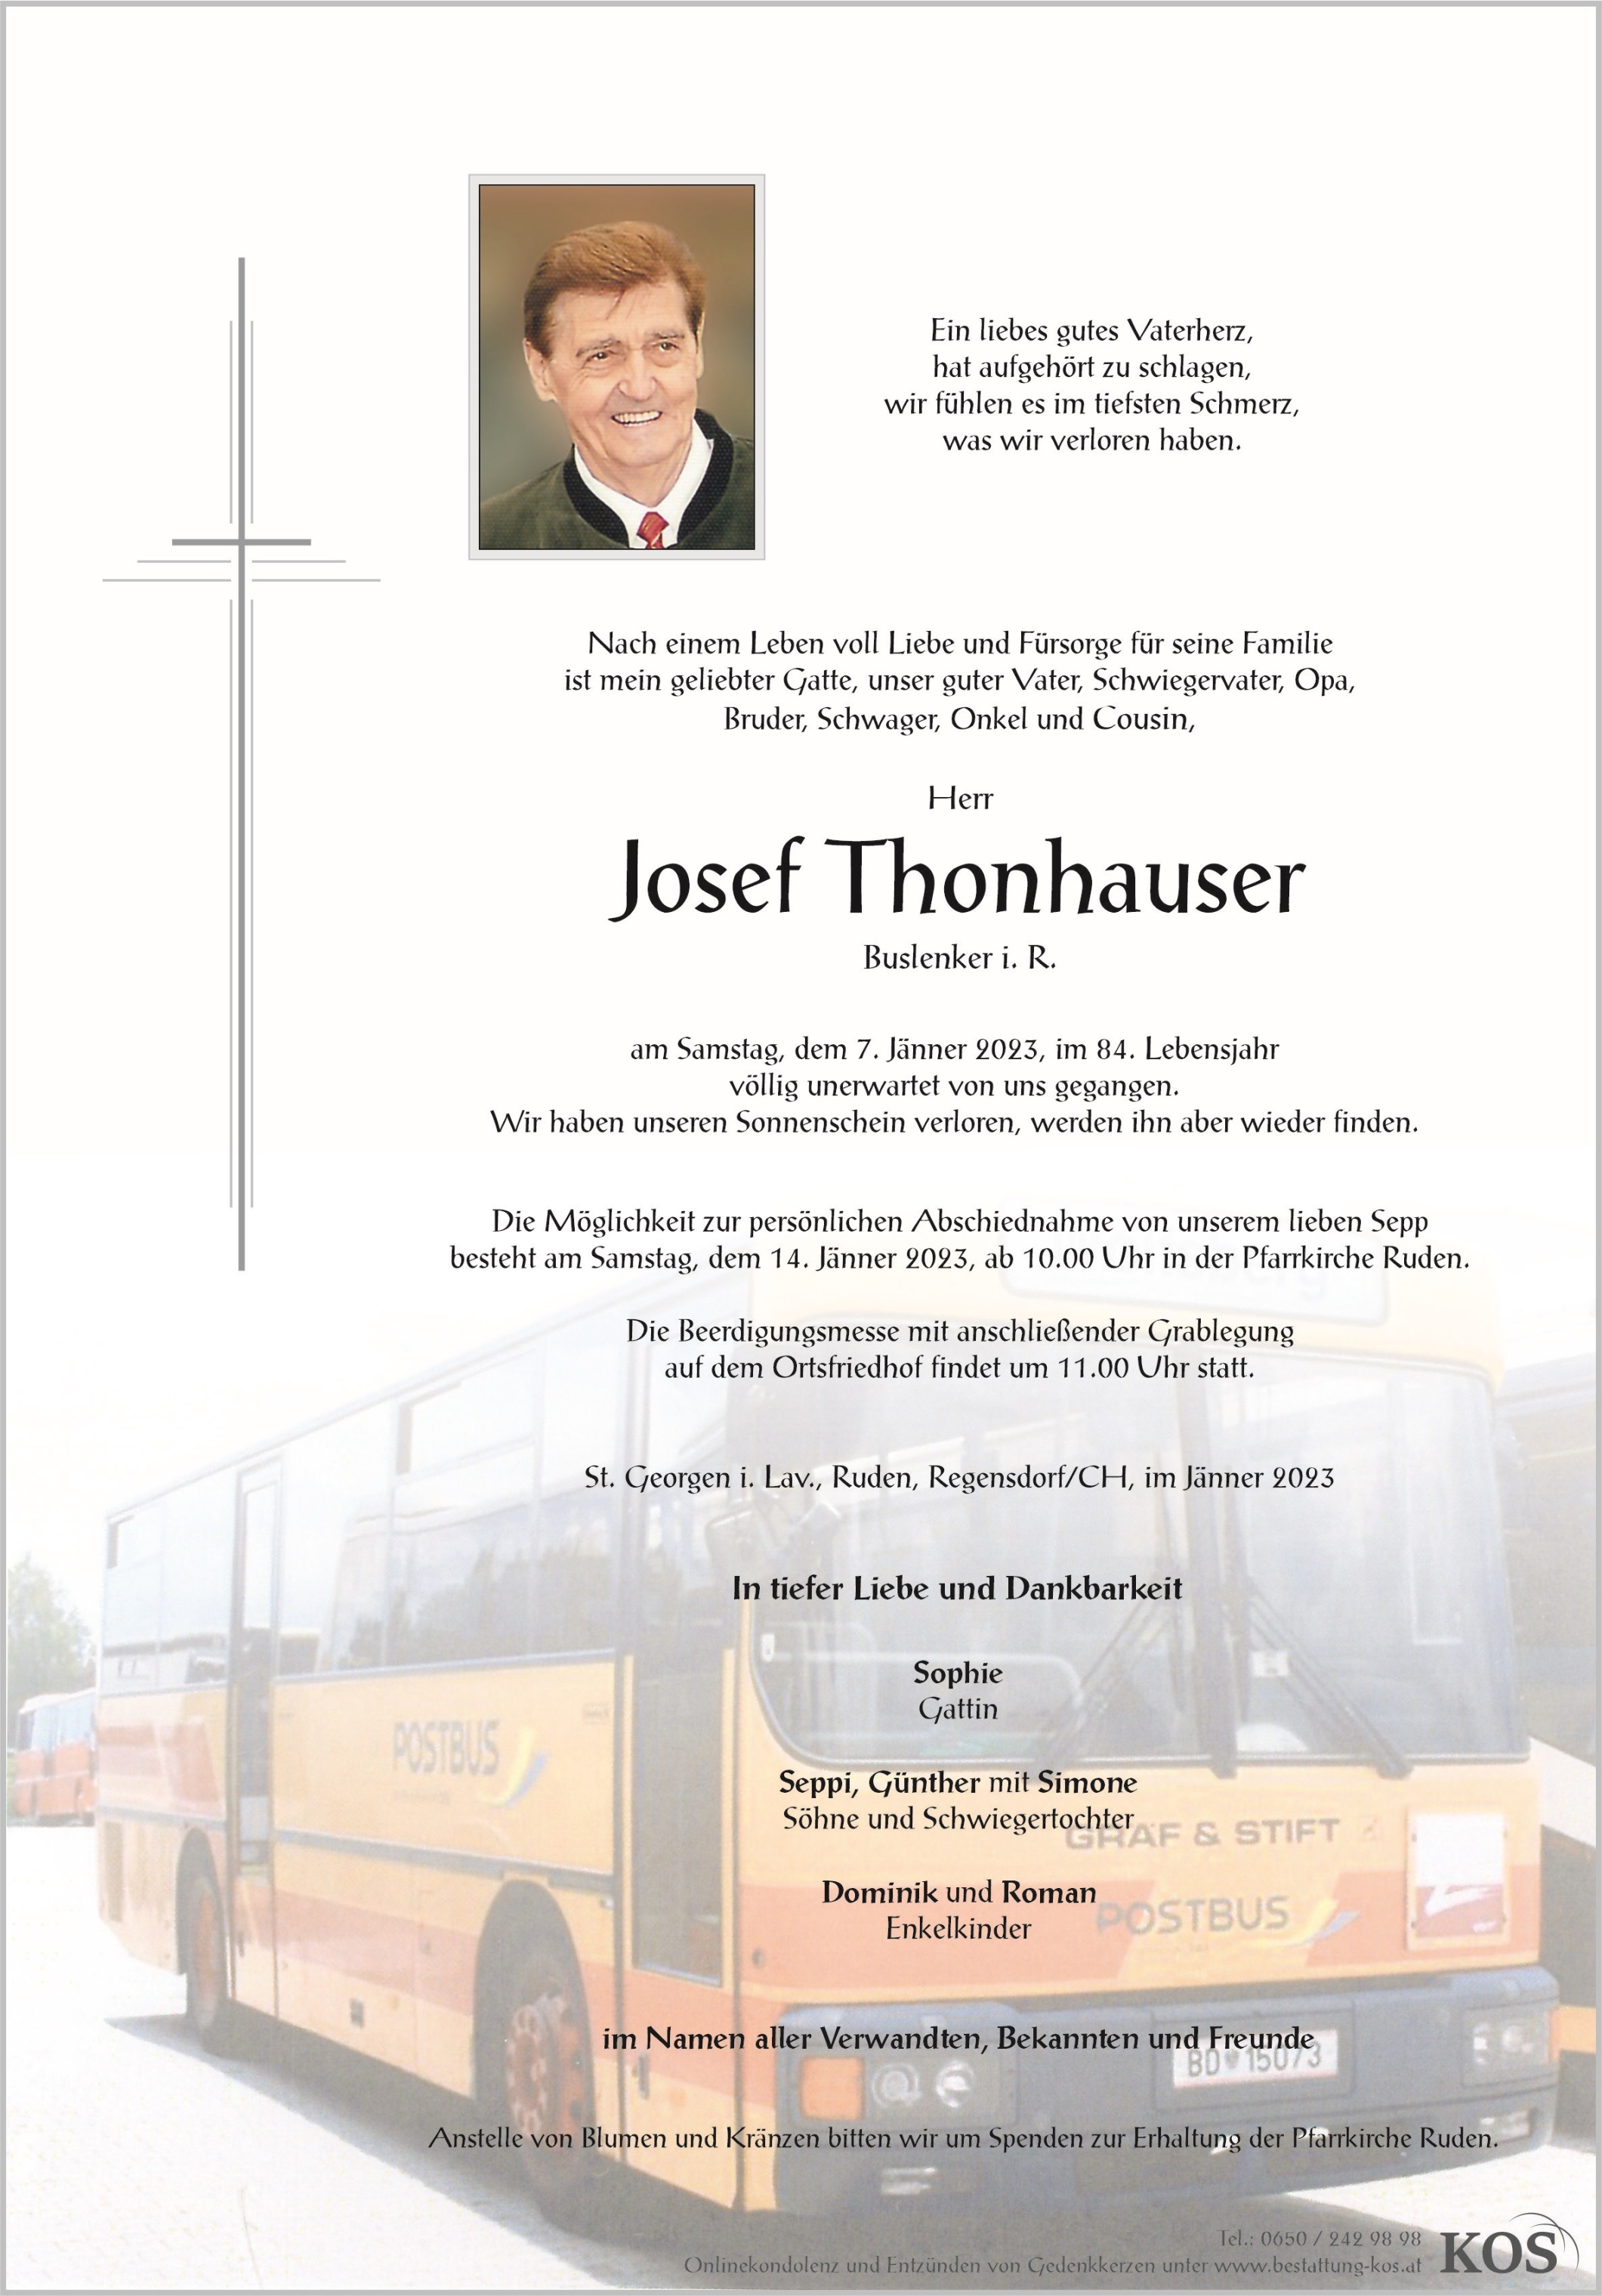 Josef Thonhauser